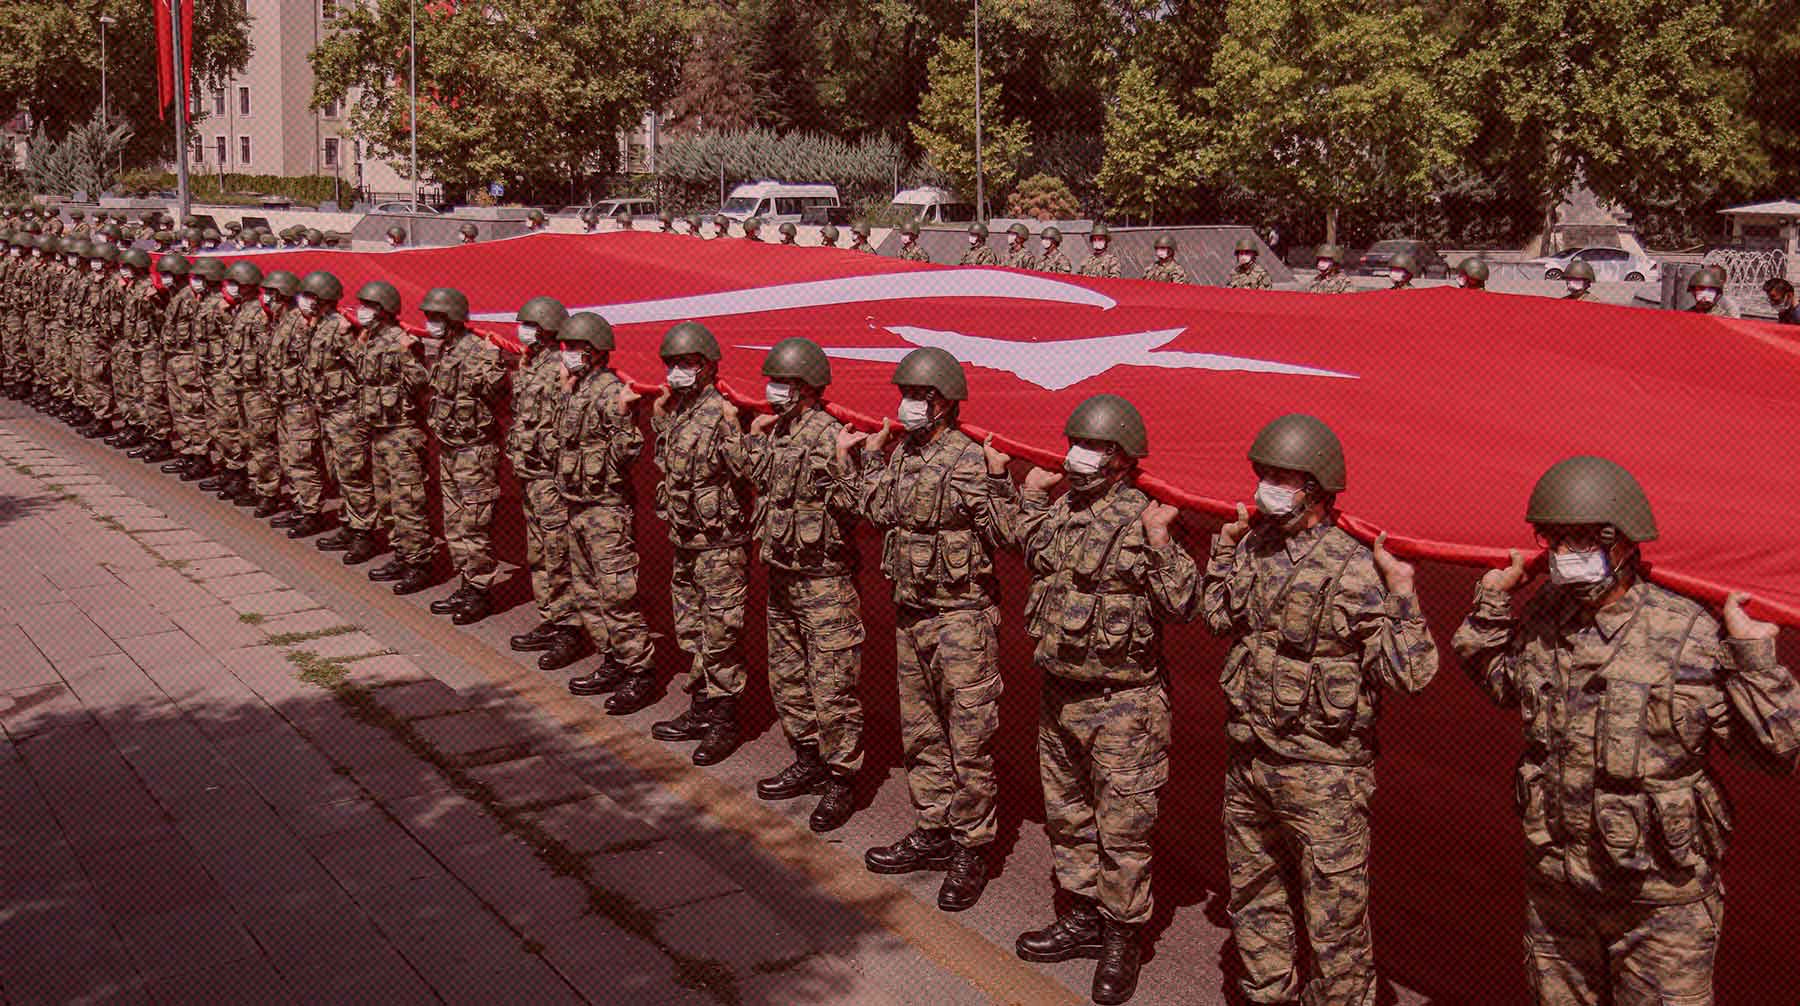 Dailystorm - Турция начала свою спецоперацию: Эрдоган отправил войска на север Сирии для создания 30-километровой зоны безопасности